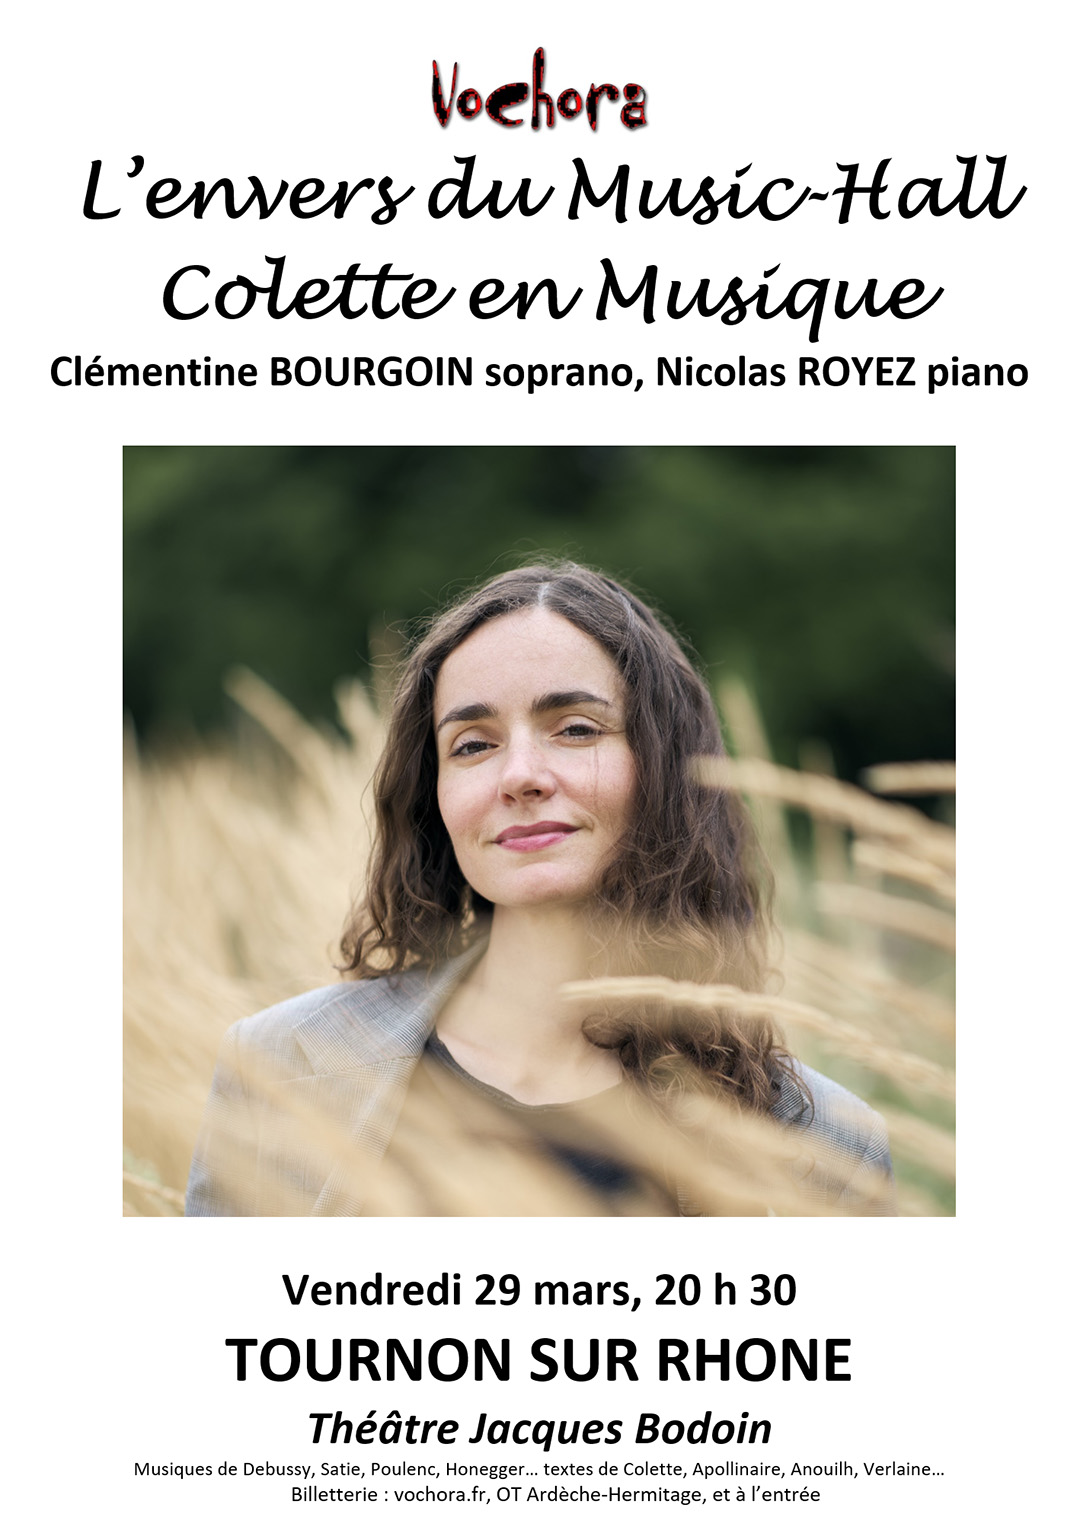 L'ENVERS DU MUSIC-HALL. COLETTE EN MUSIQUE. Proposé par Vochora. Vendredi 29 mars à 20h30 au Théâtre Jacques Bodoin de Tournon-sur-Rhône